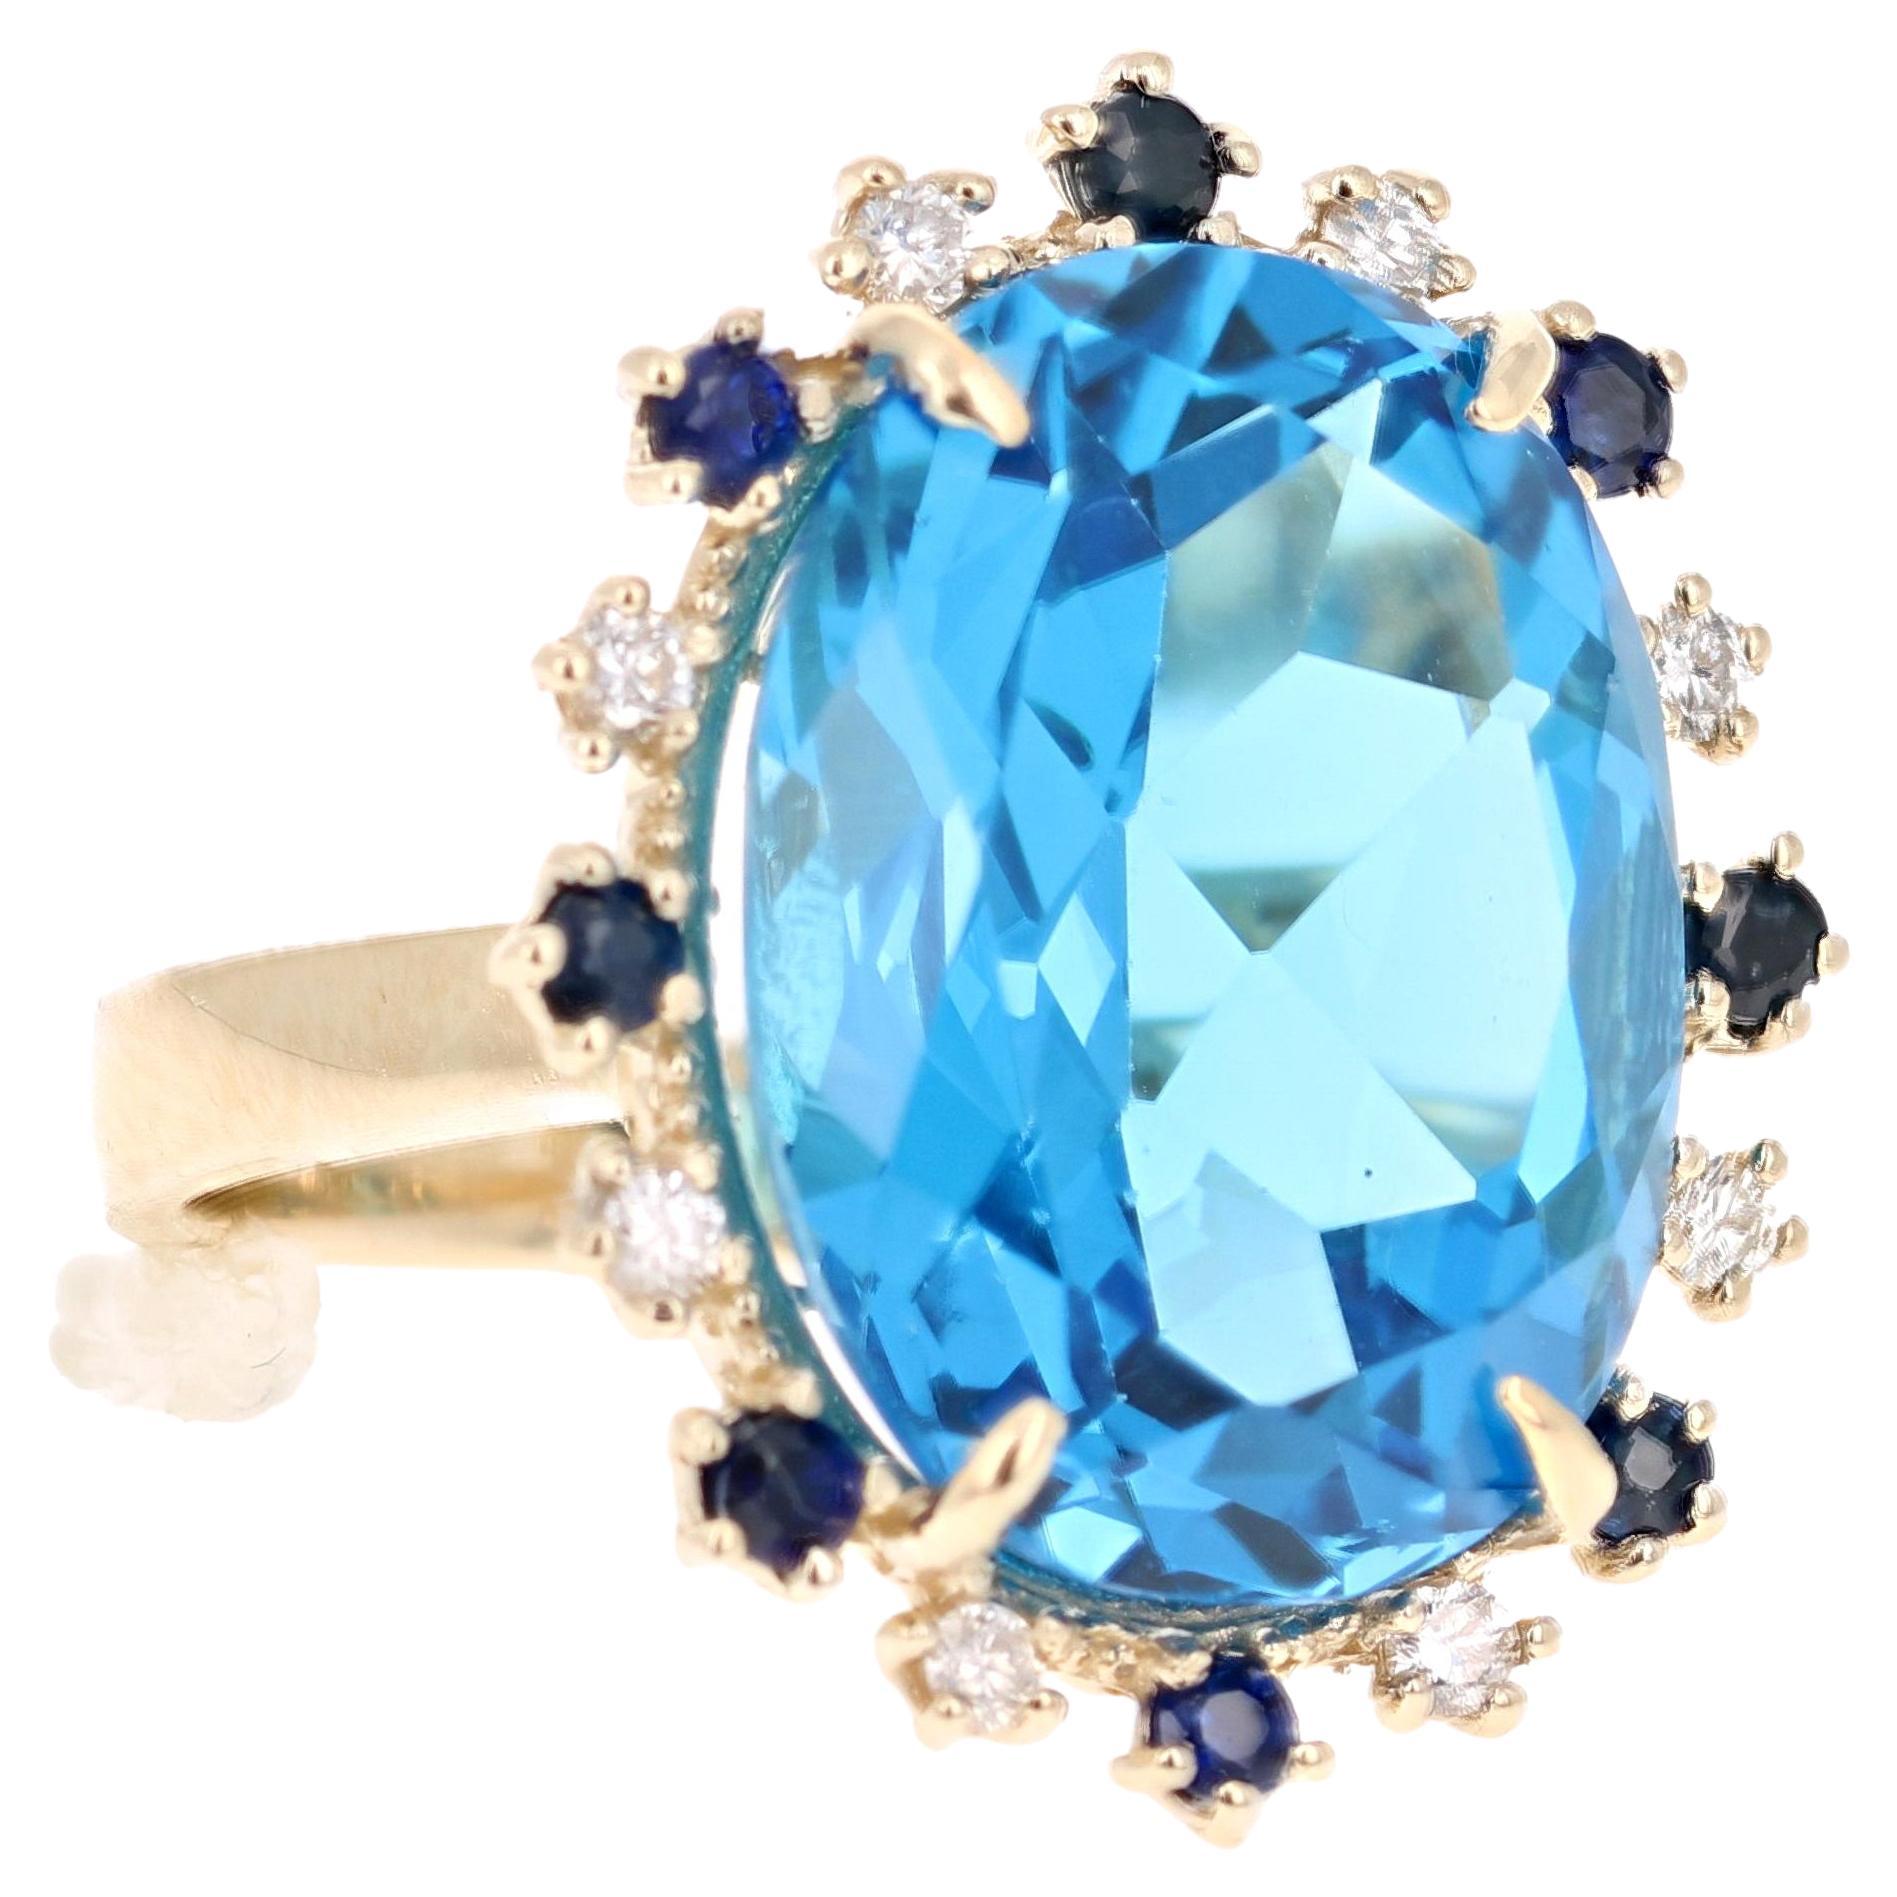 Le moins que l'on puisse dire, c'est qu'il est magnifique ! Cette magnifique topaze bleue de 20,73 carats de taille ovale est entourée de 8 diamants de taille ronde pesant 0,25 carats (pureté : SI, couleur : F) et de 8 saphirs bleus pesant 0,52